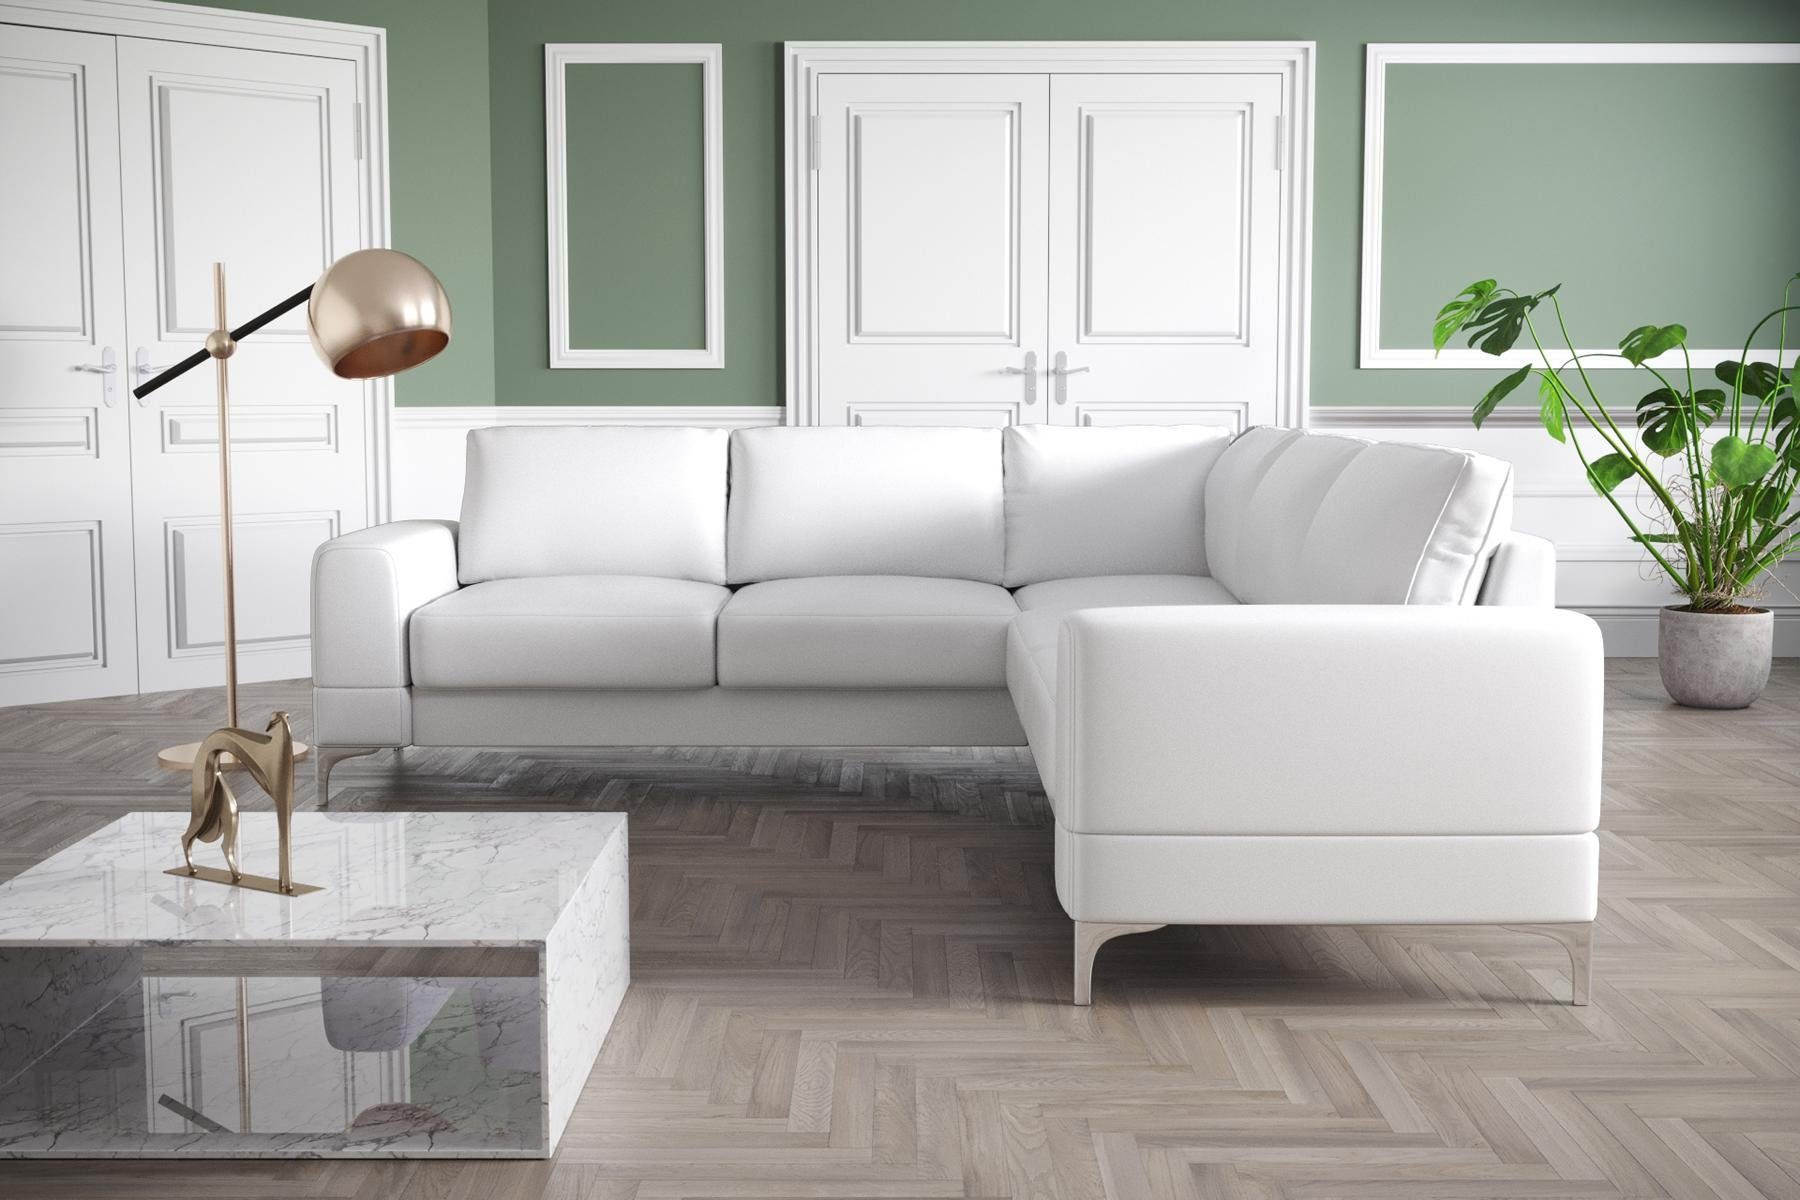 JVmoebel Ecksofa, L-Form Wohnzimmer Weiß Couch Ecksofa Modern Design Türkis Möbel Textil